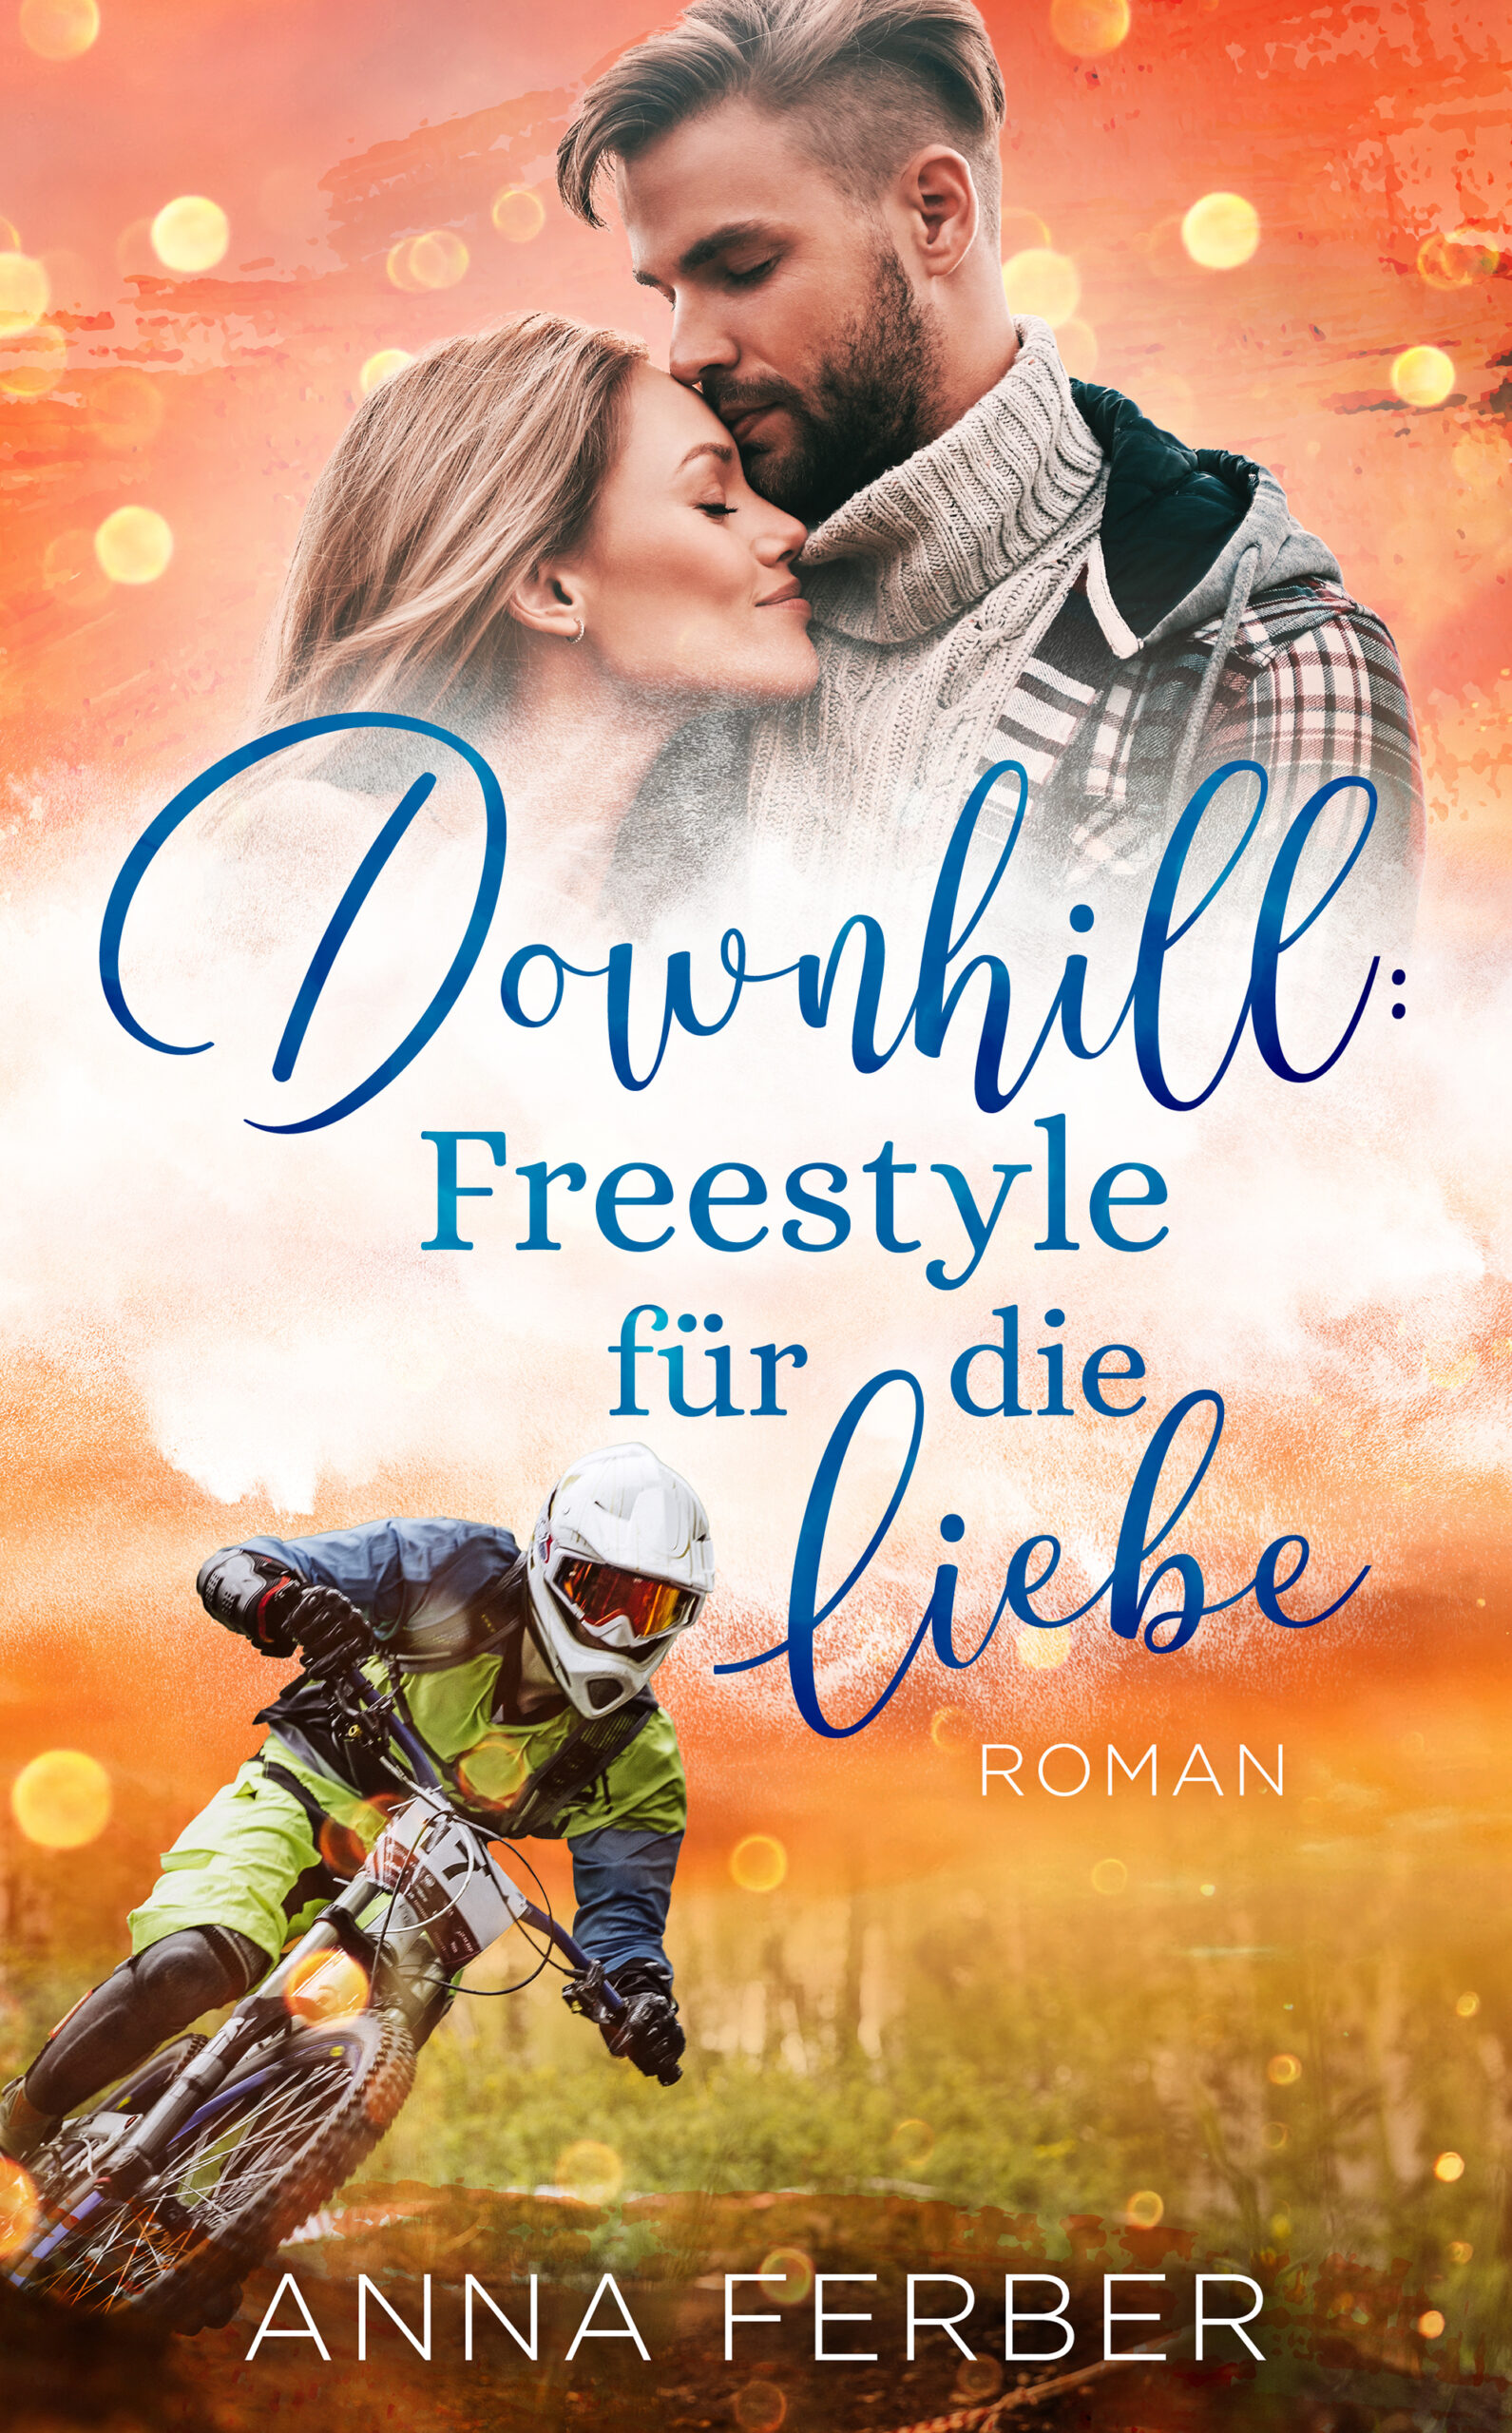 Downhill: Freestyle für die Liebe